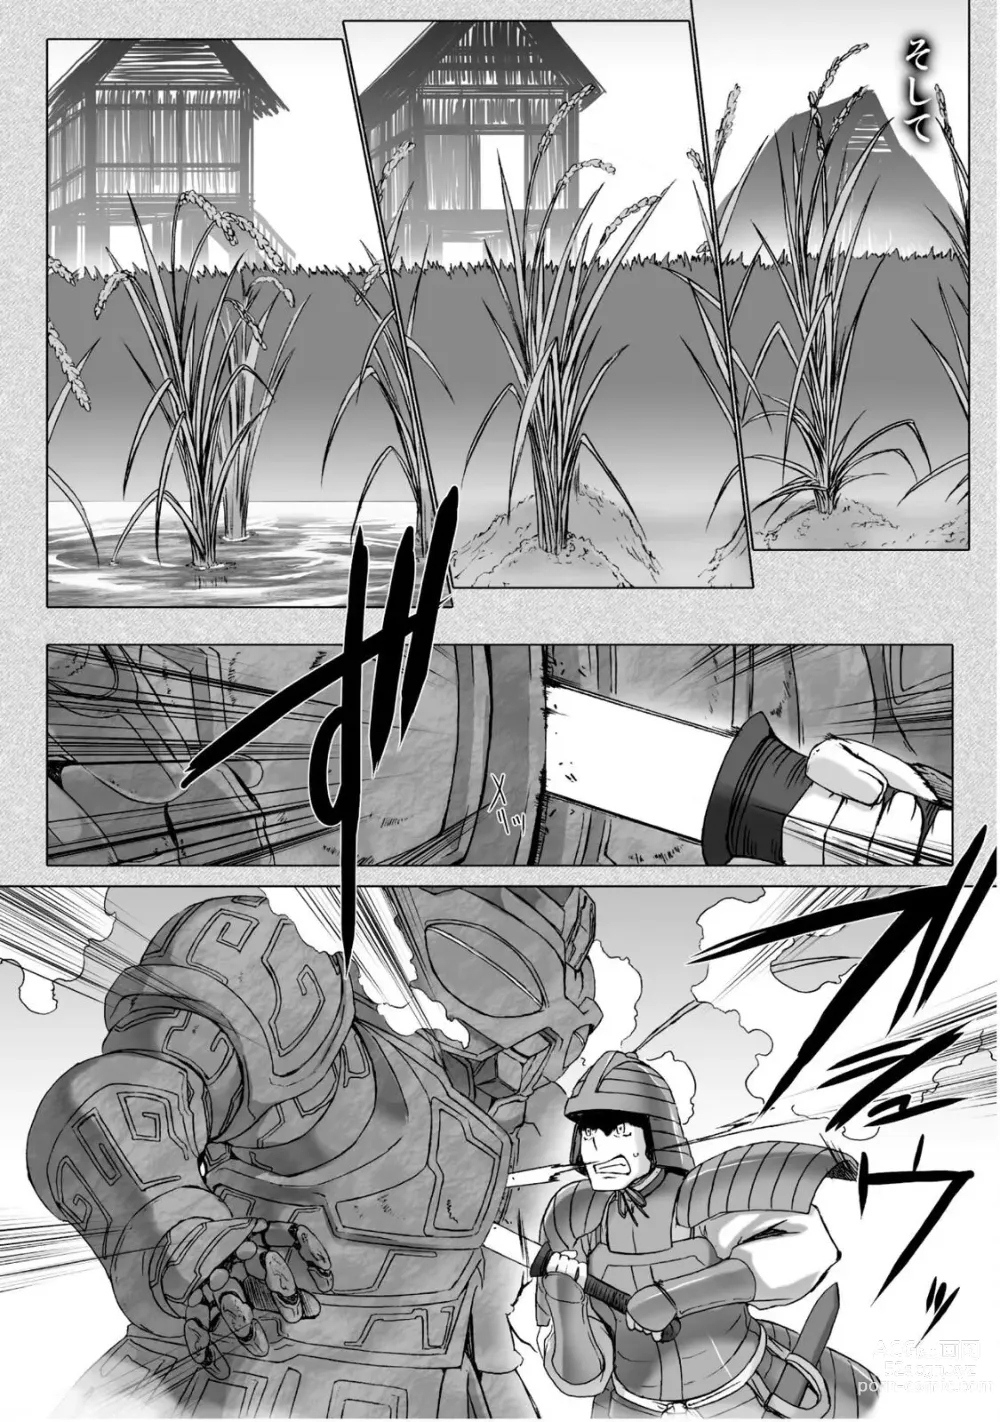 Page 185 of manga Ziggurat 5